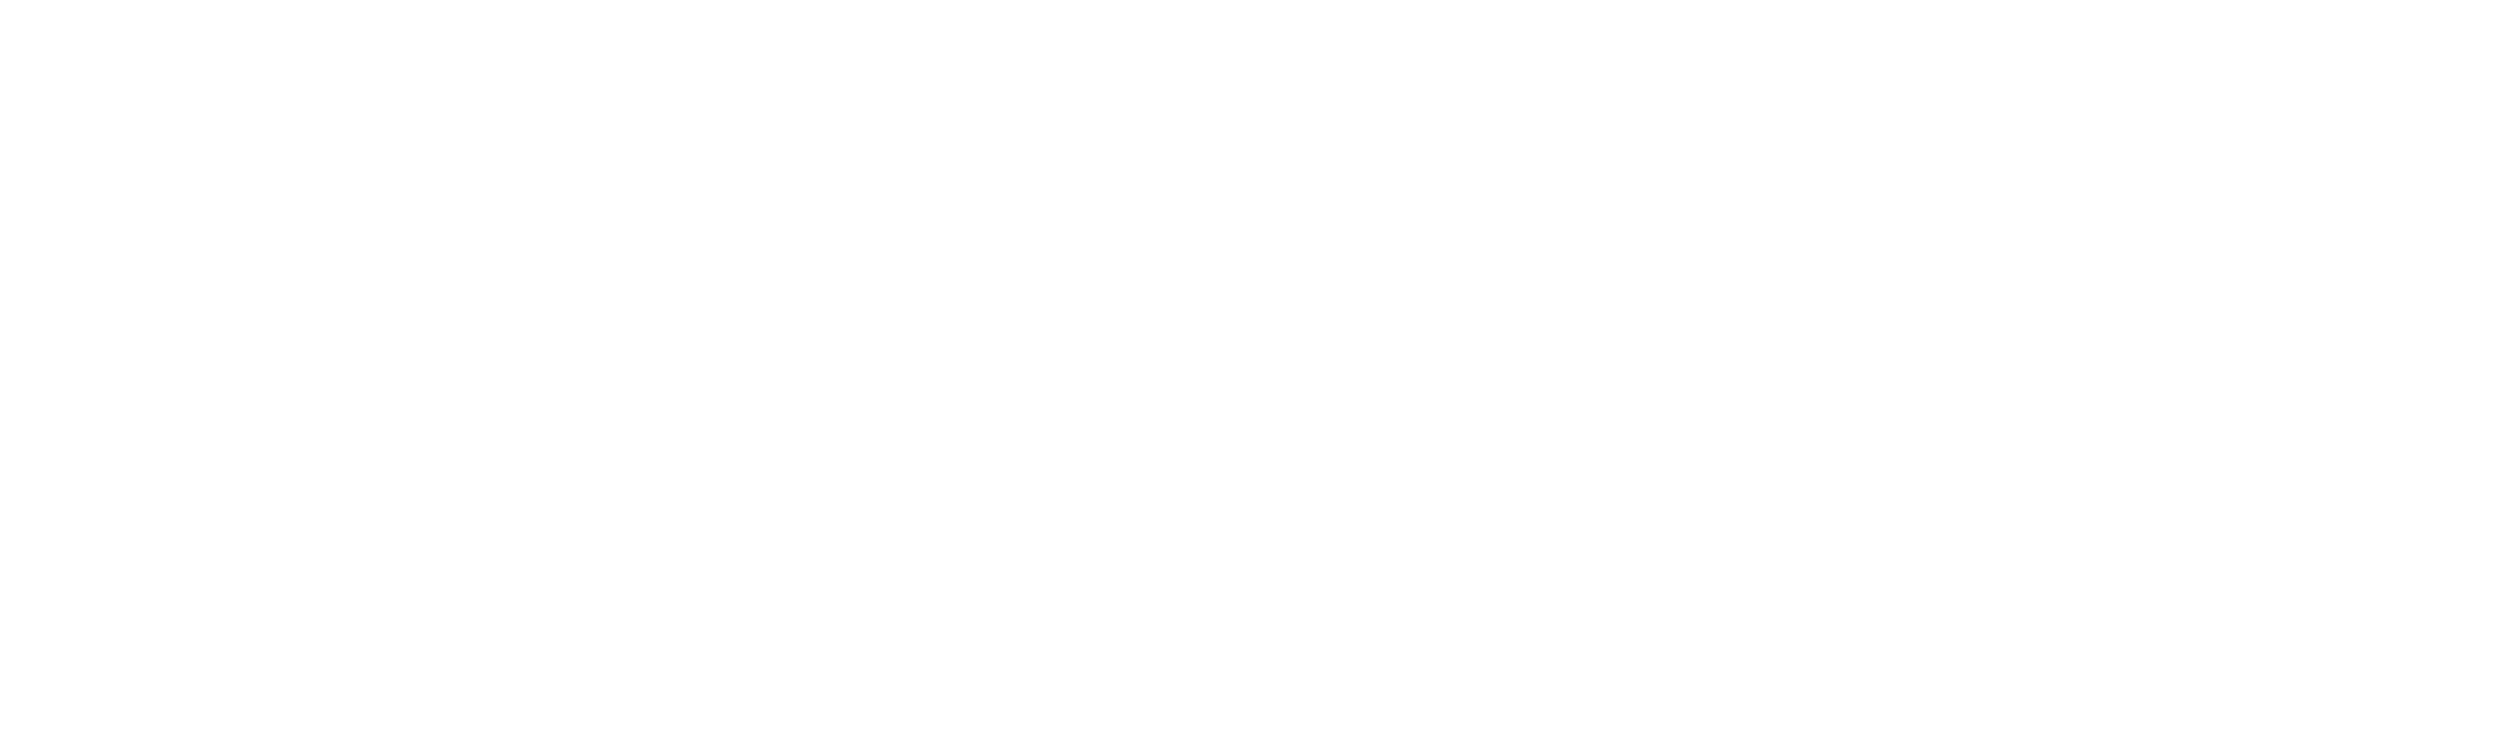 metrobar-logo-main - 051021-transparent-white.png